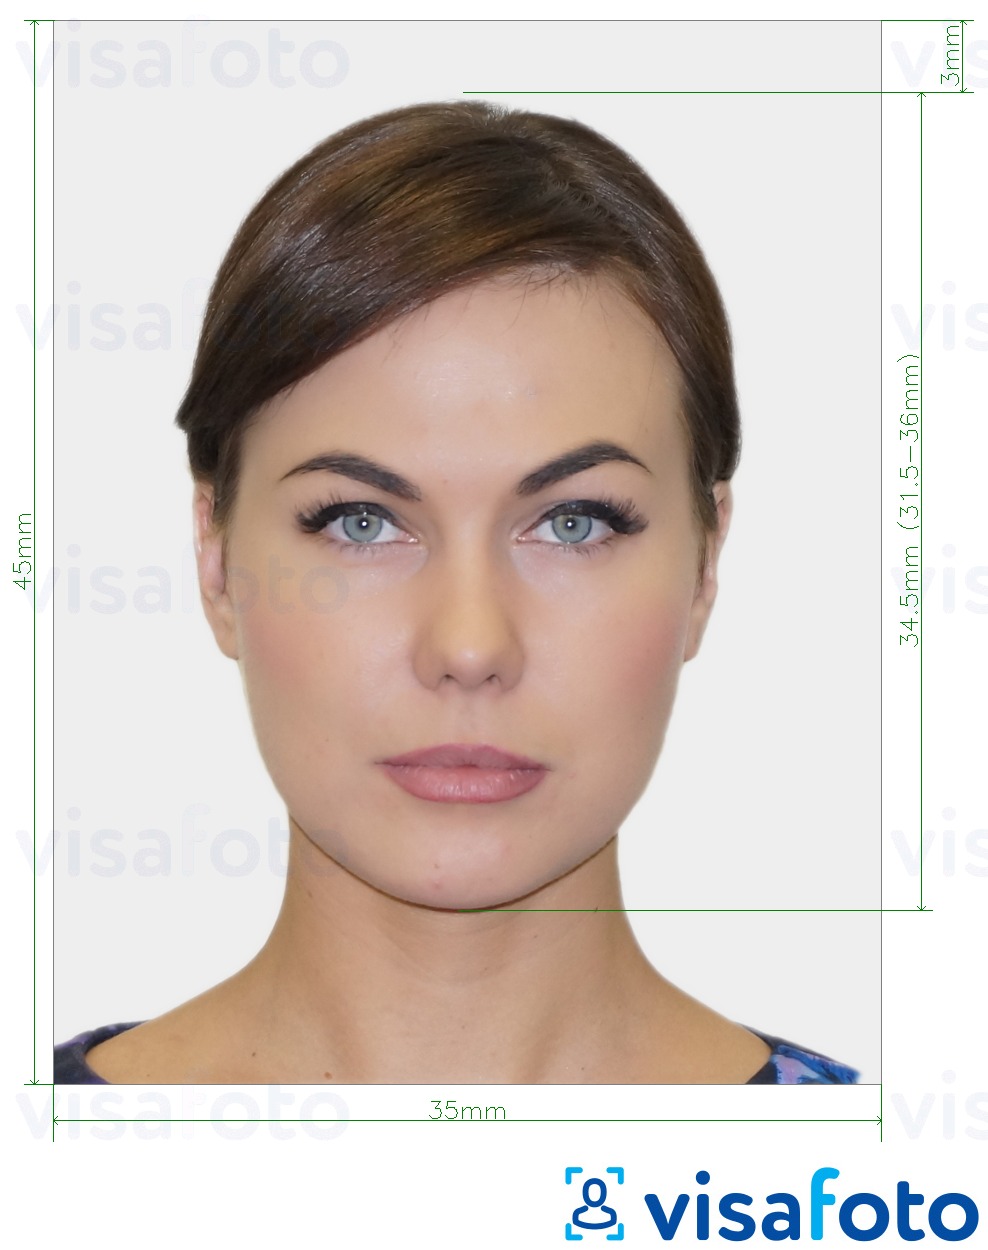 Exemplo de foto para Cartão de identidade suíço 35x45 mm (3,5x4,5 cm) com especificação exata de dimensão